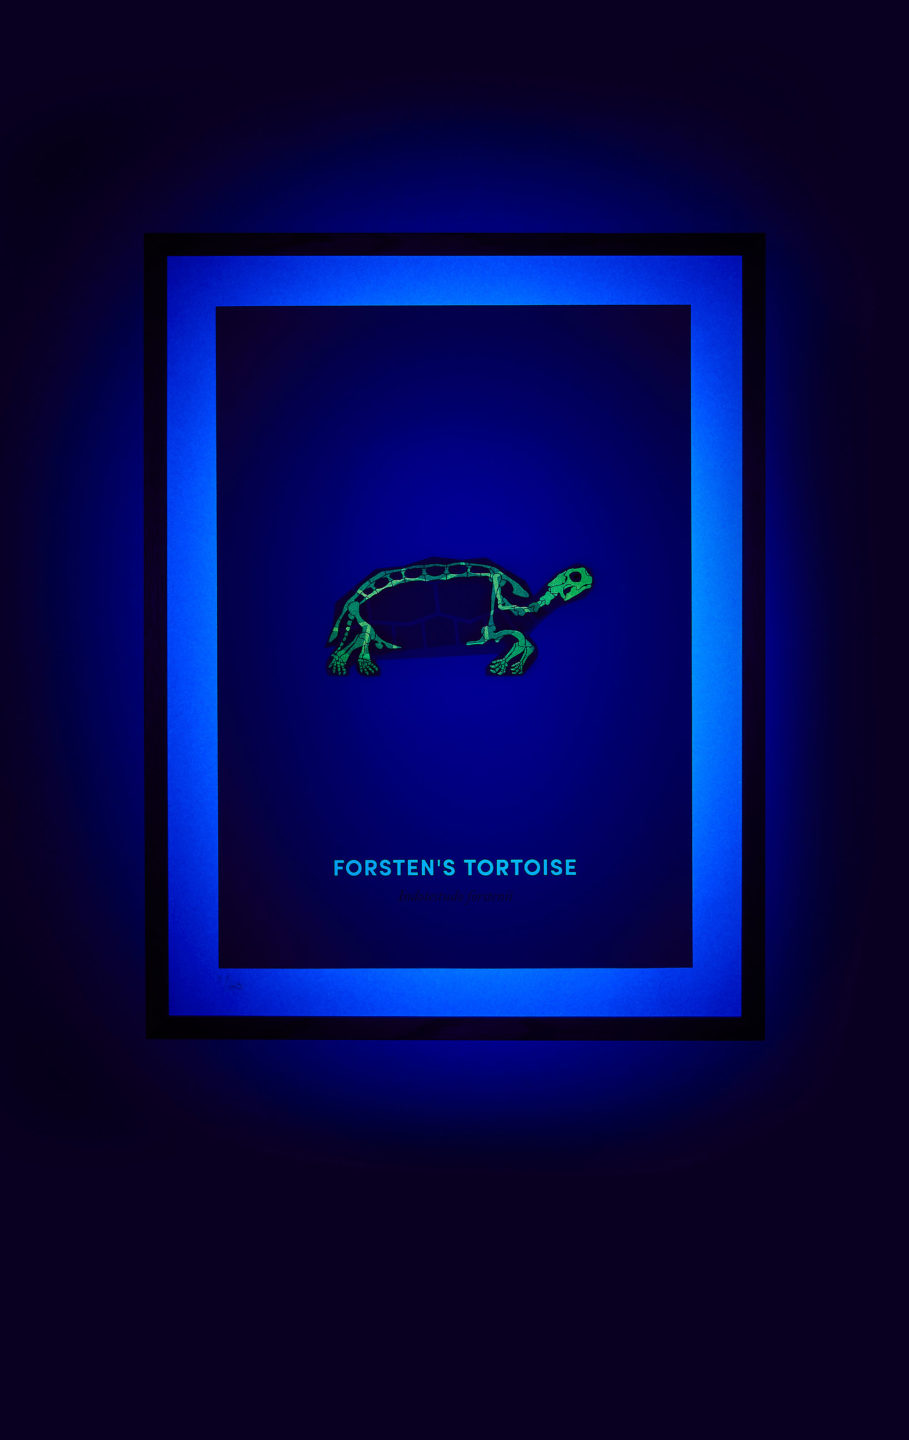 Forsten’s Tortoise screen print under UV light - shown on hover